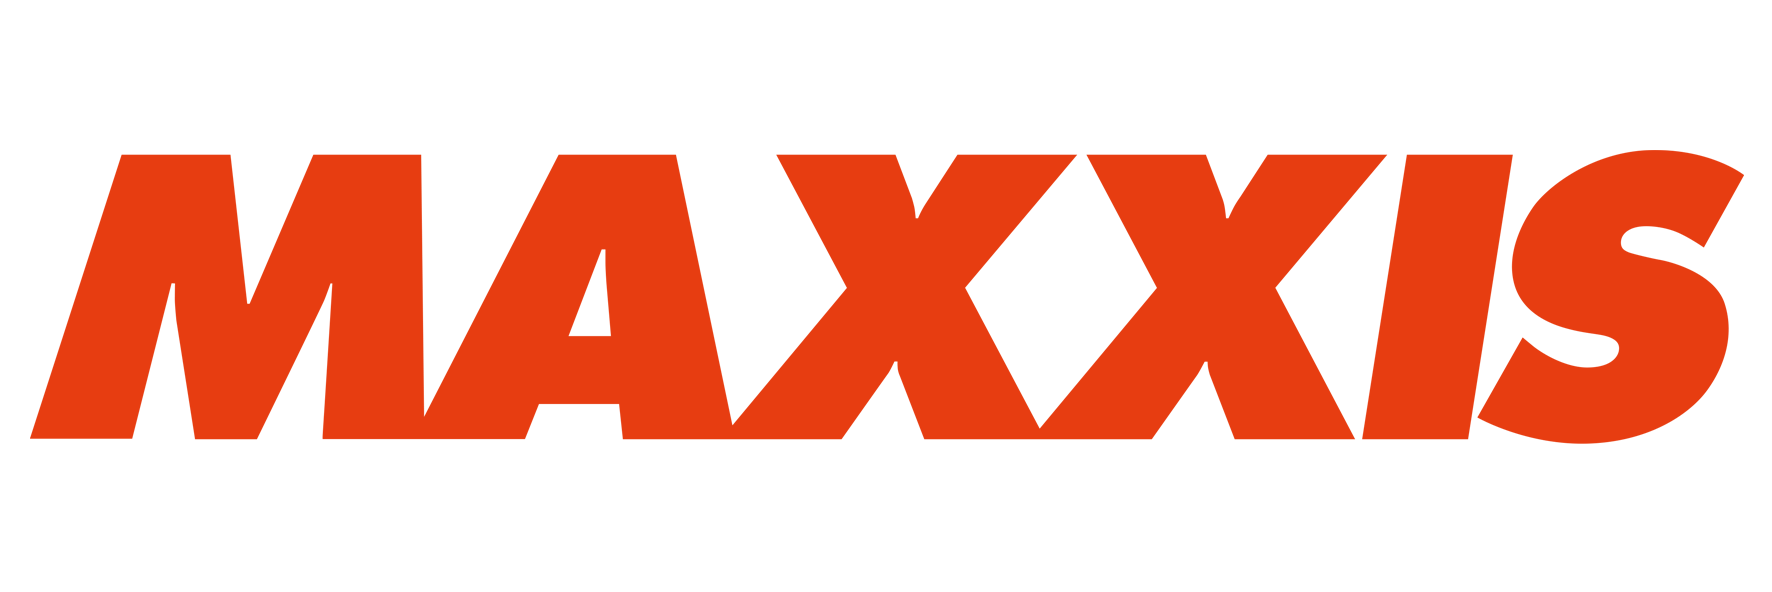 logo maxxis